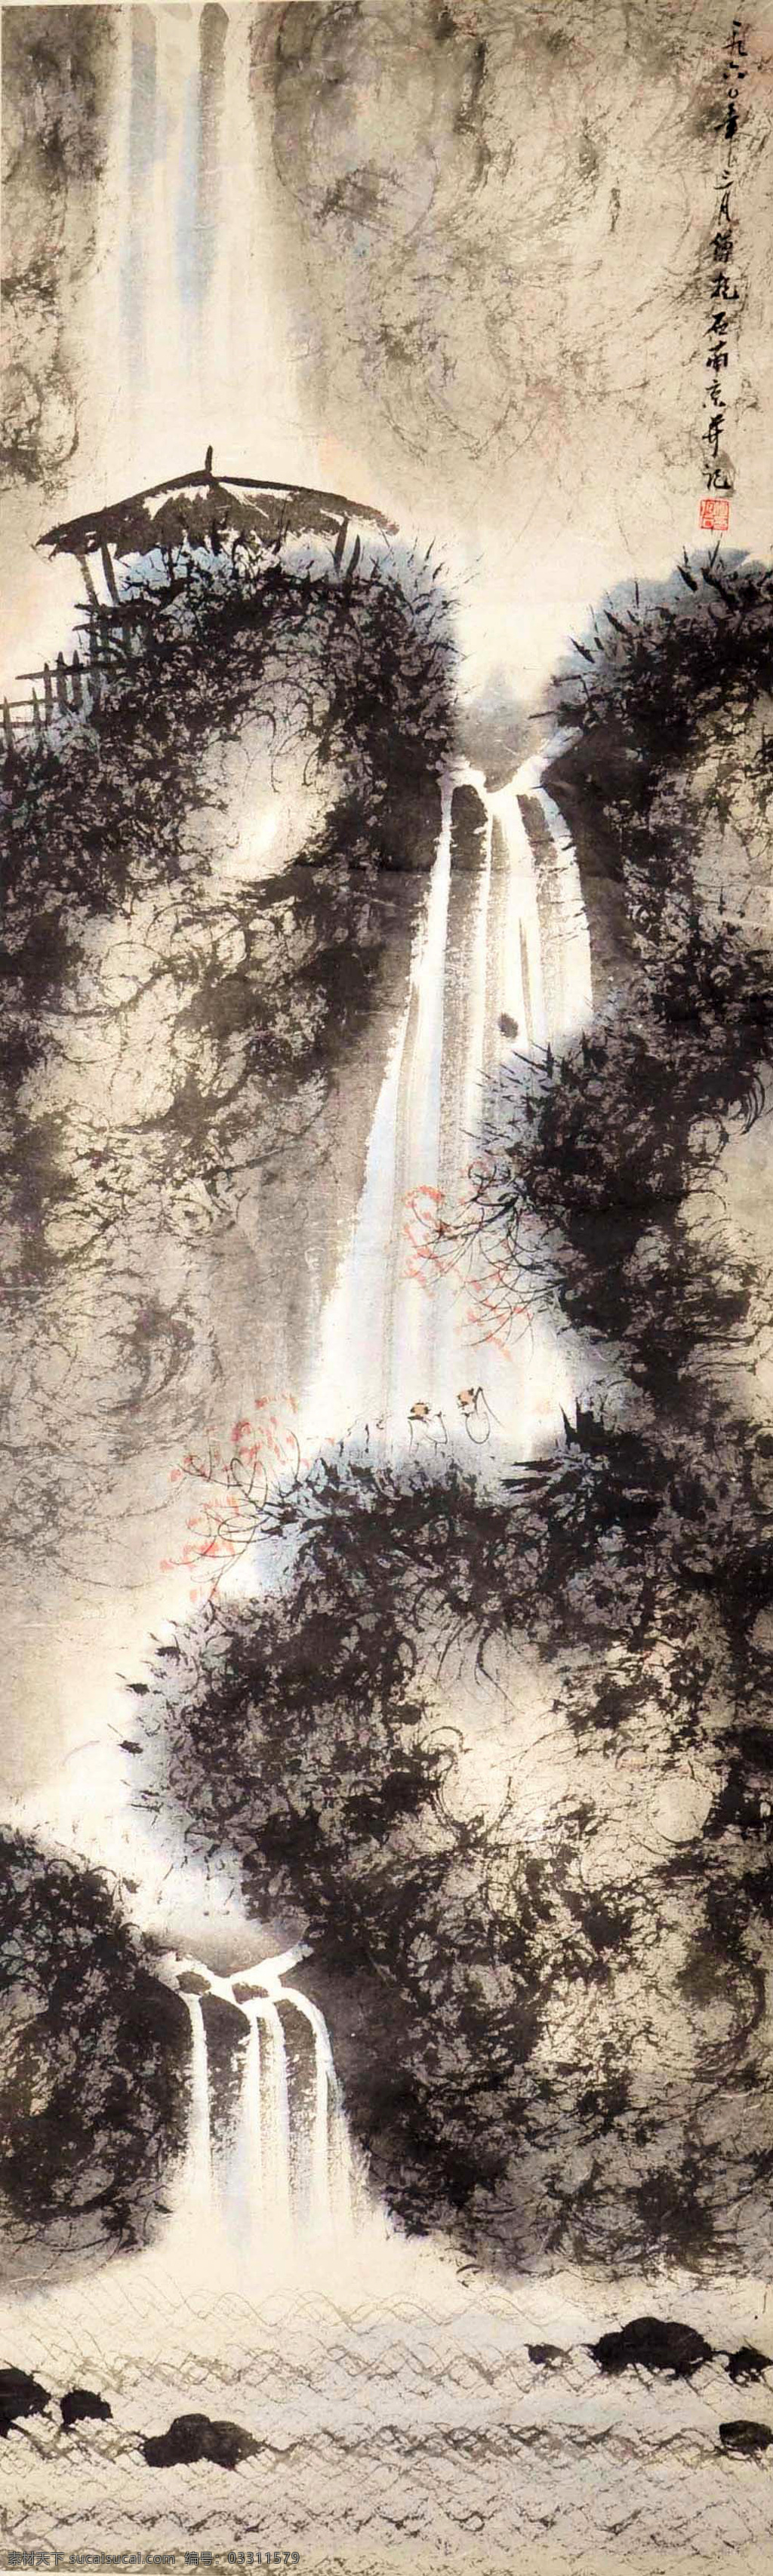 傅抱石 瀑布 写意 水墨画 国画 中国画 传统画 名家 绘画 艺术 文化艺术 绘画书法